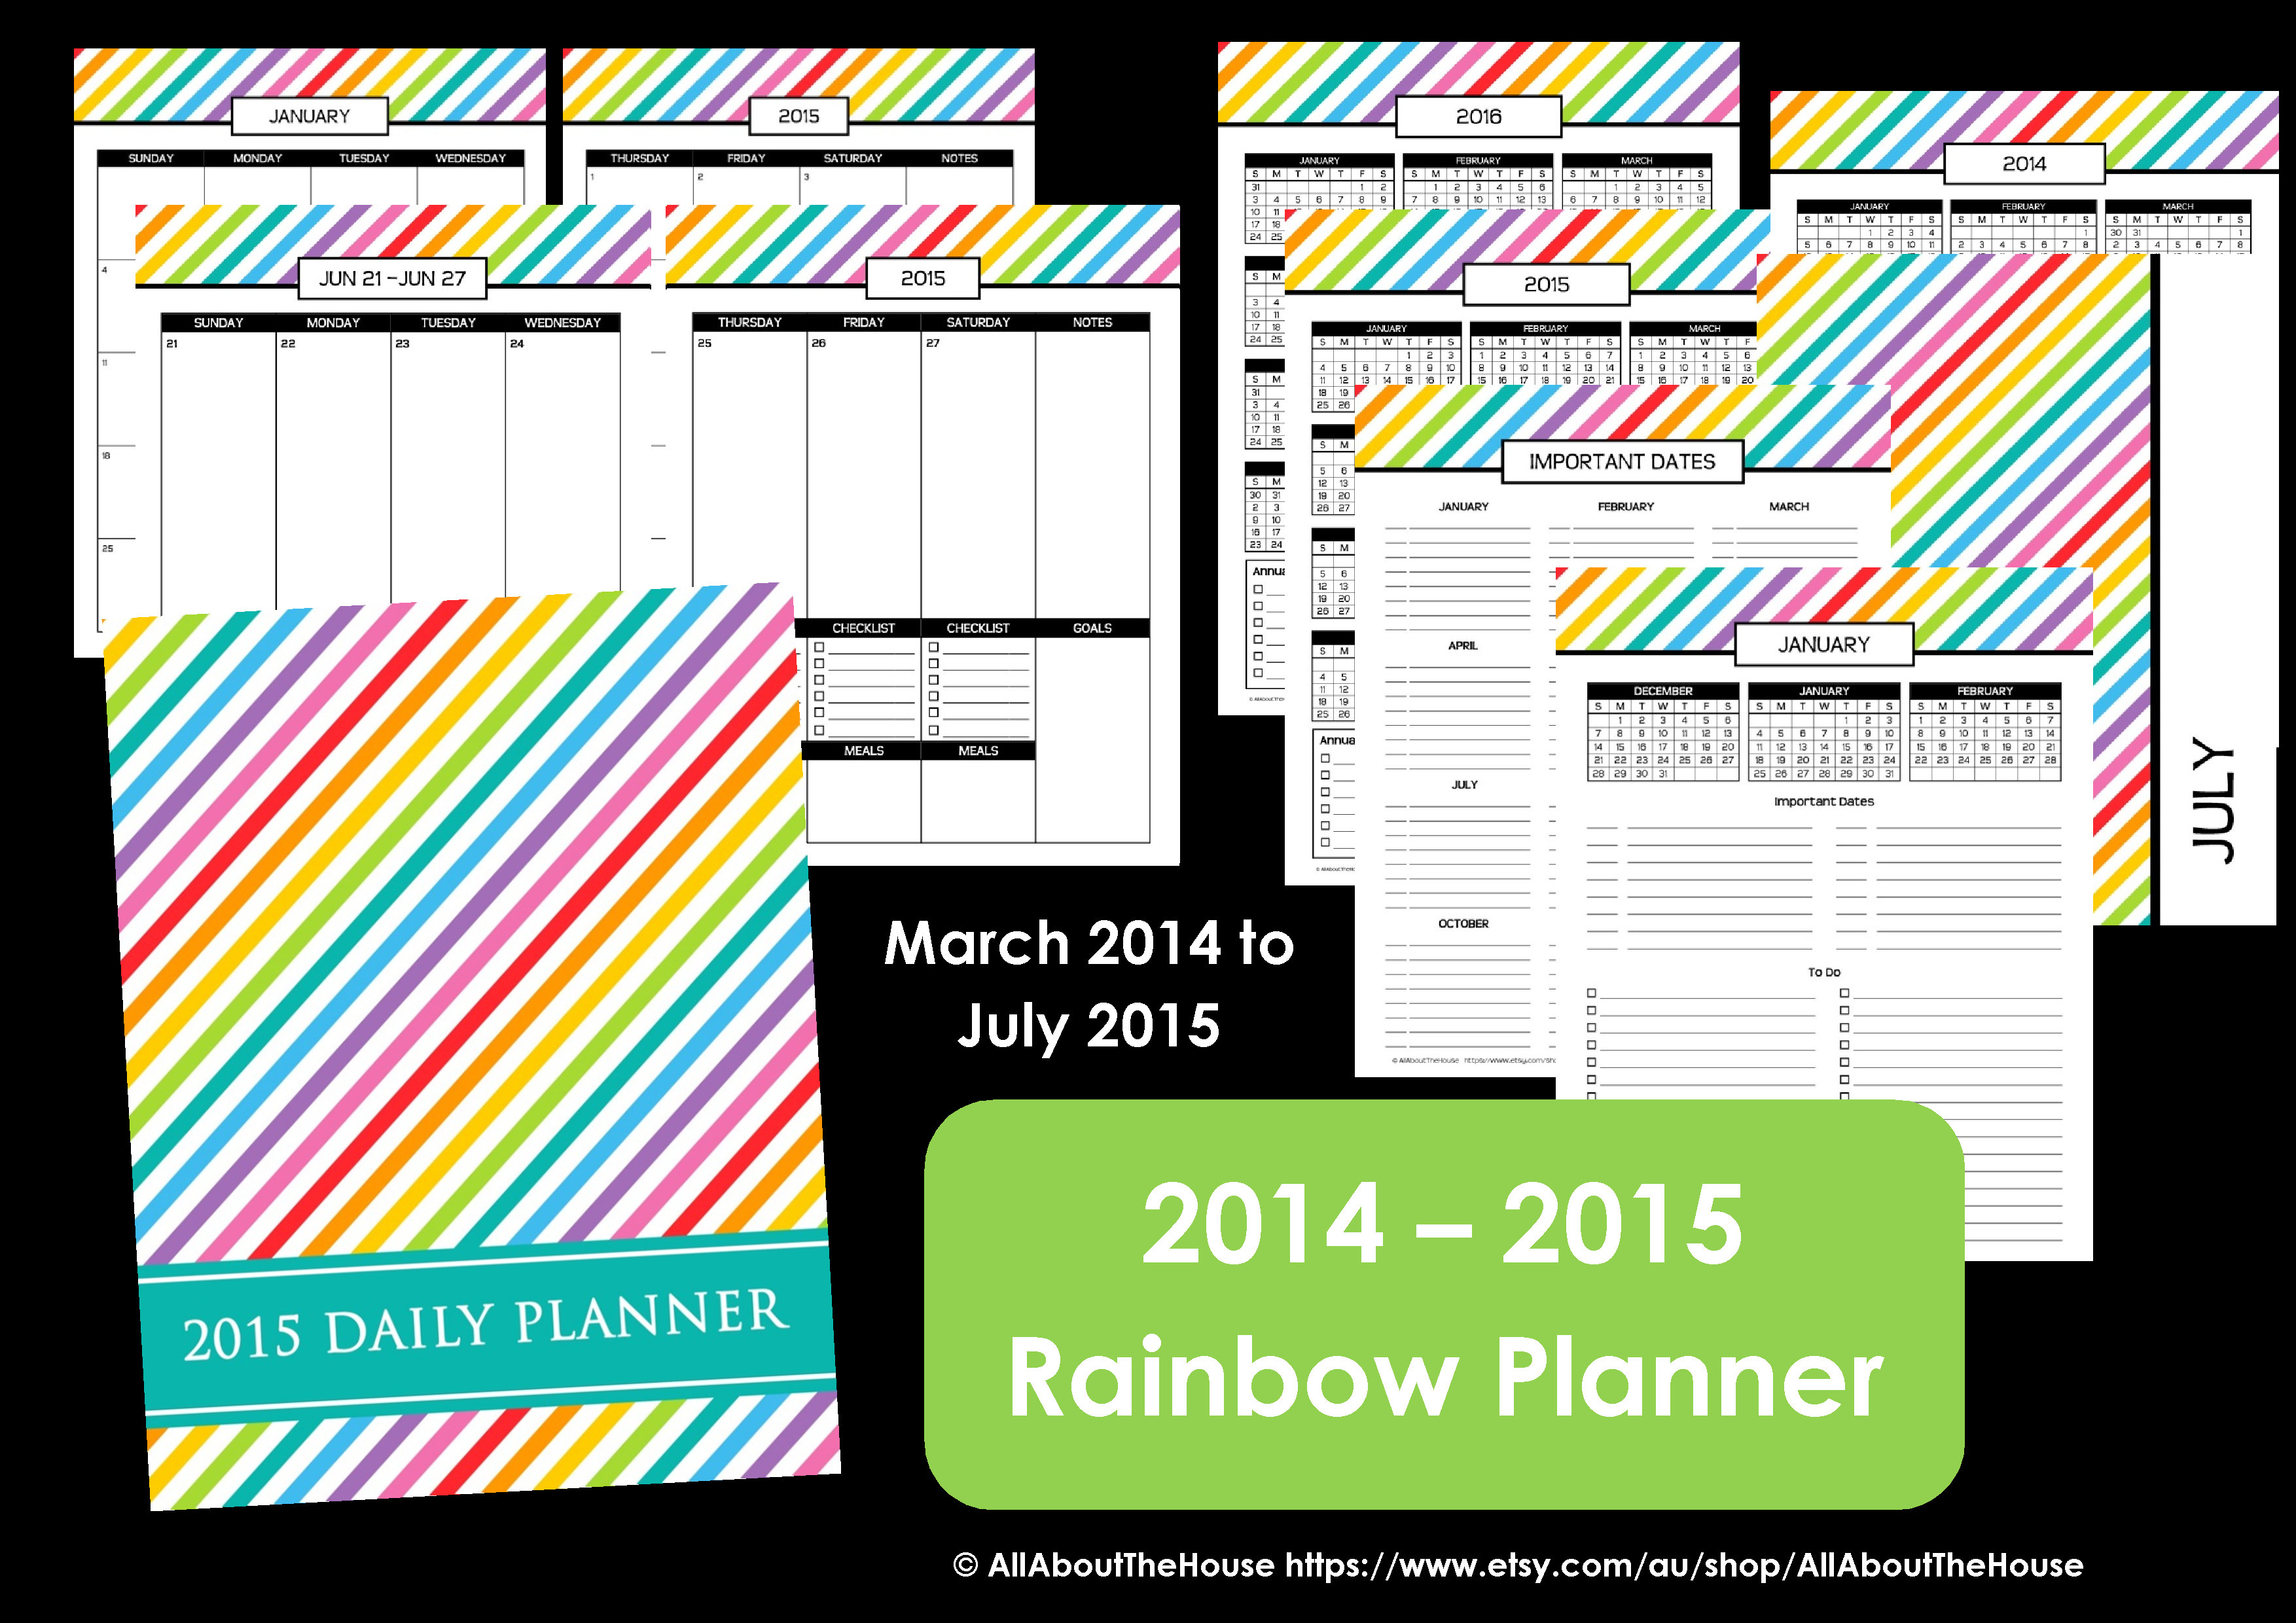 MP checklist 2014 - 2014 planner